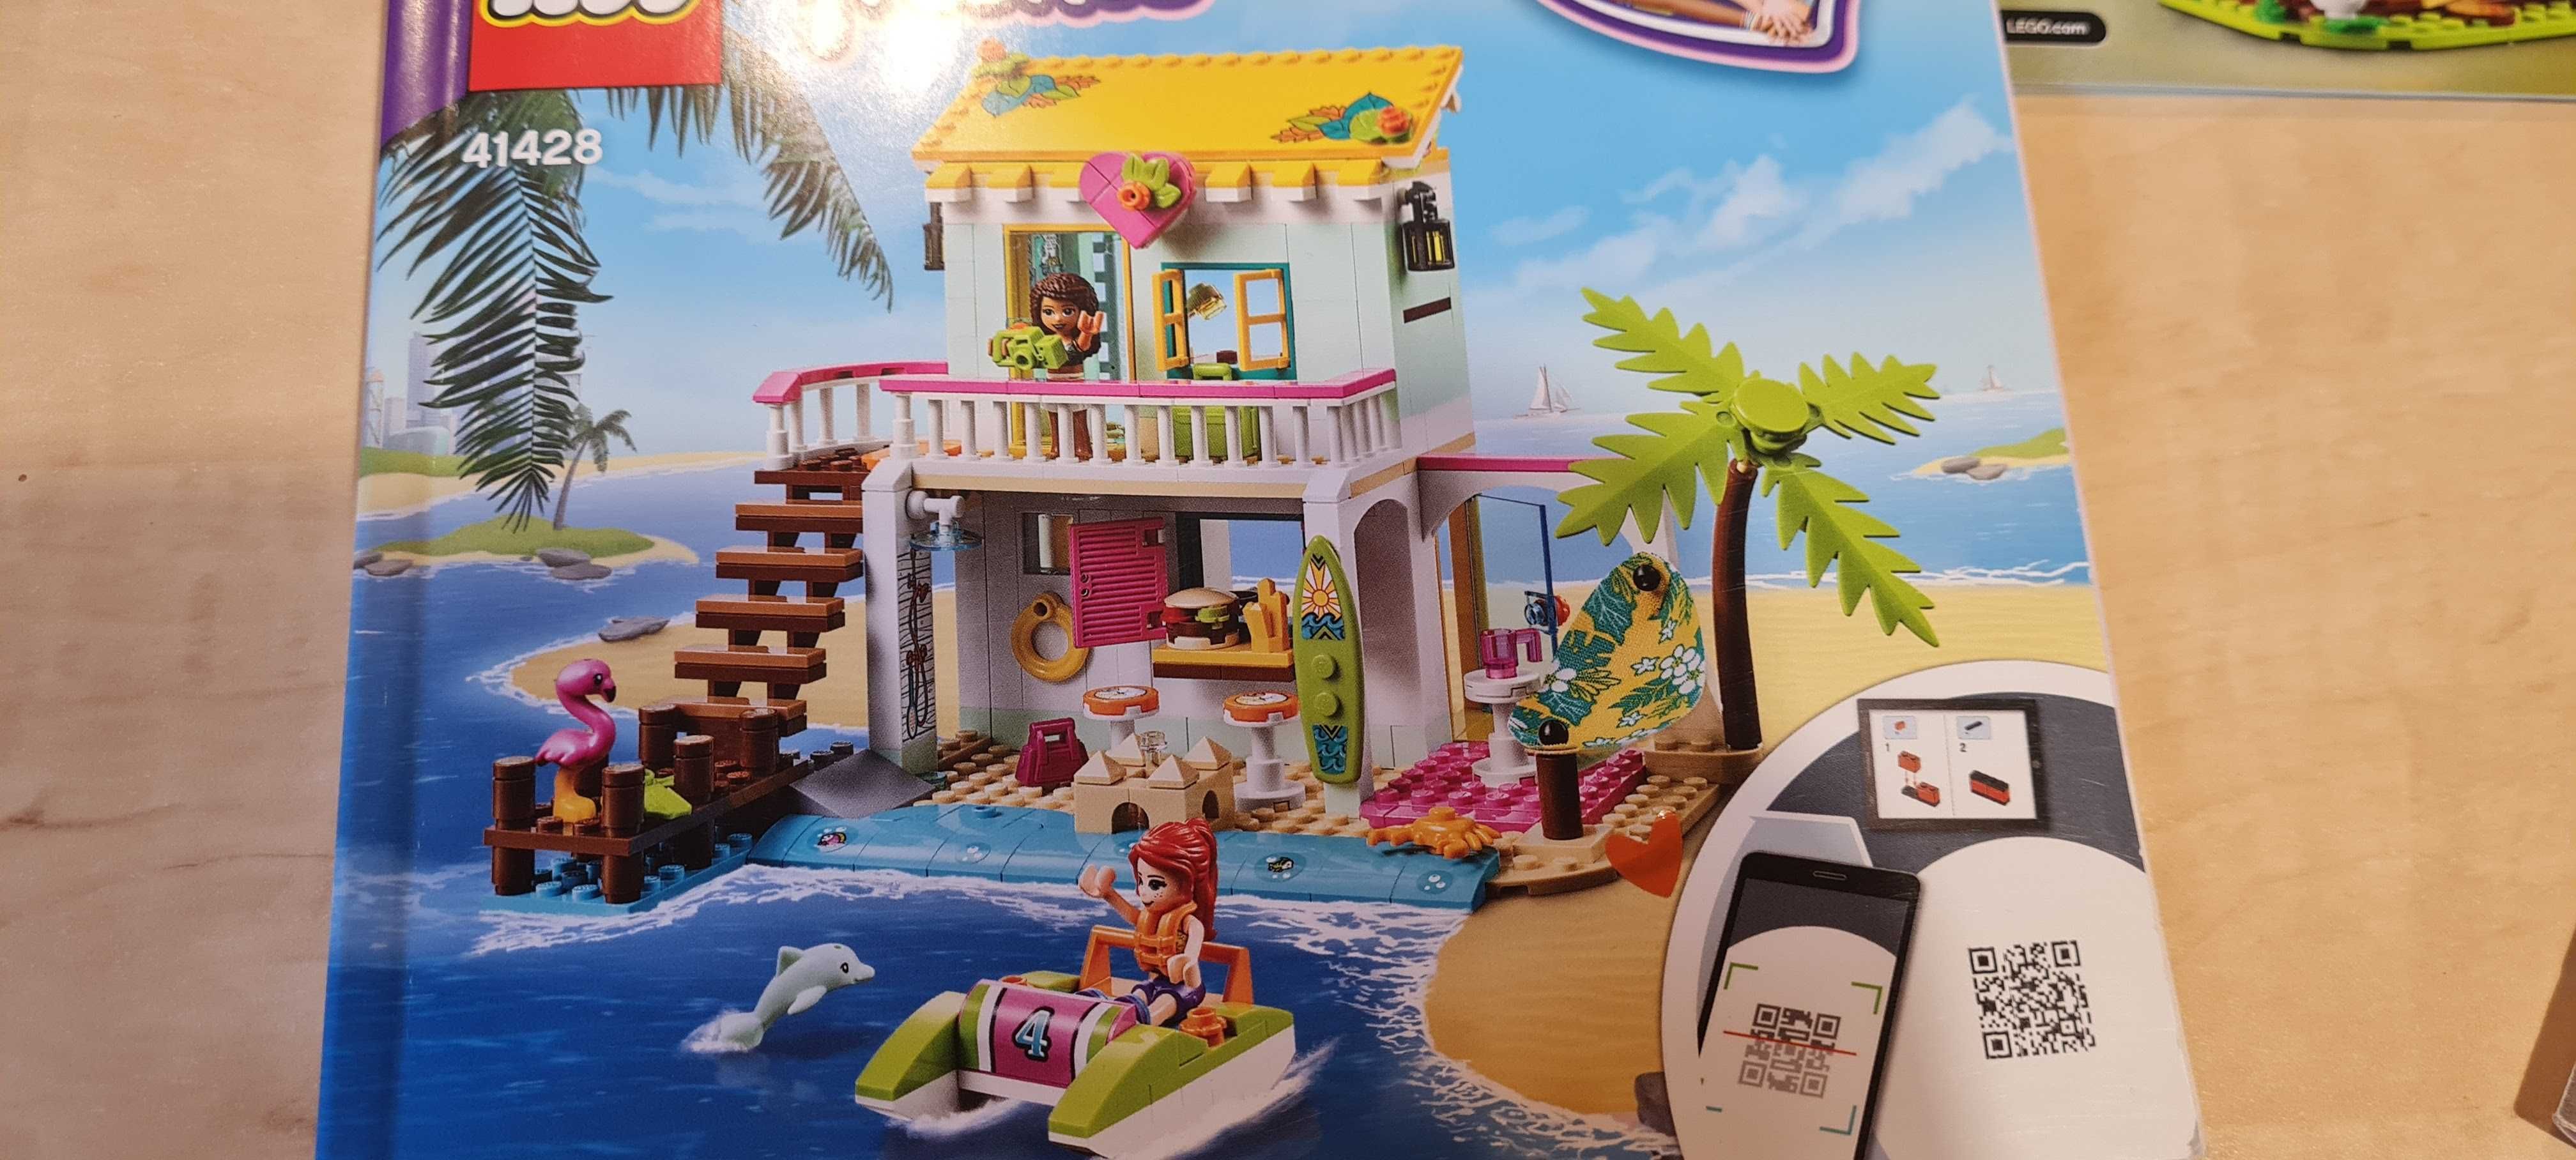 Casa de pe plajă, 41428, 6 ani+, LEGO